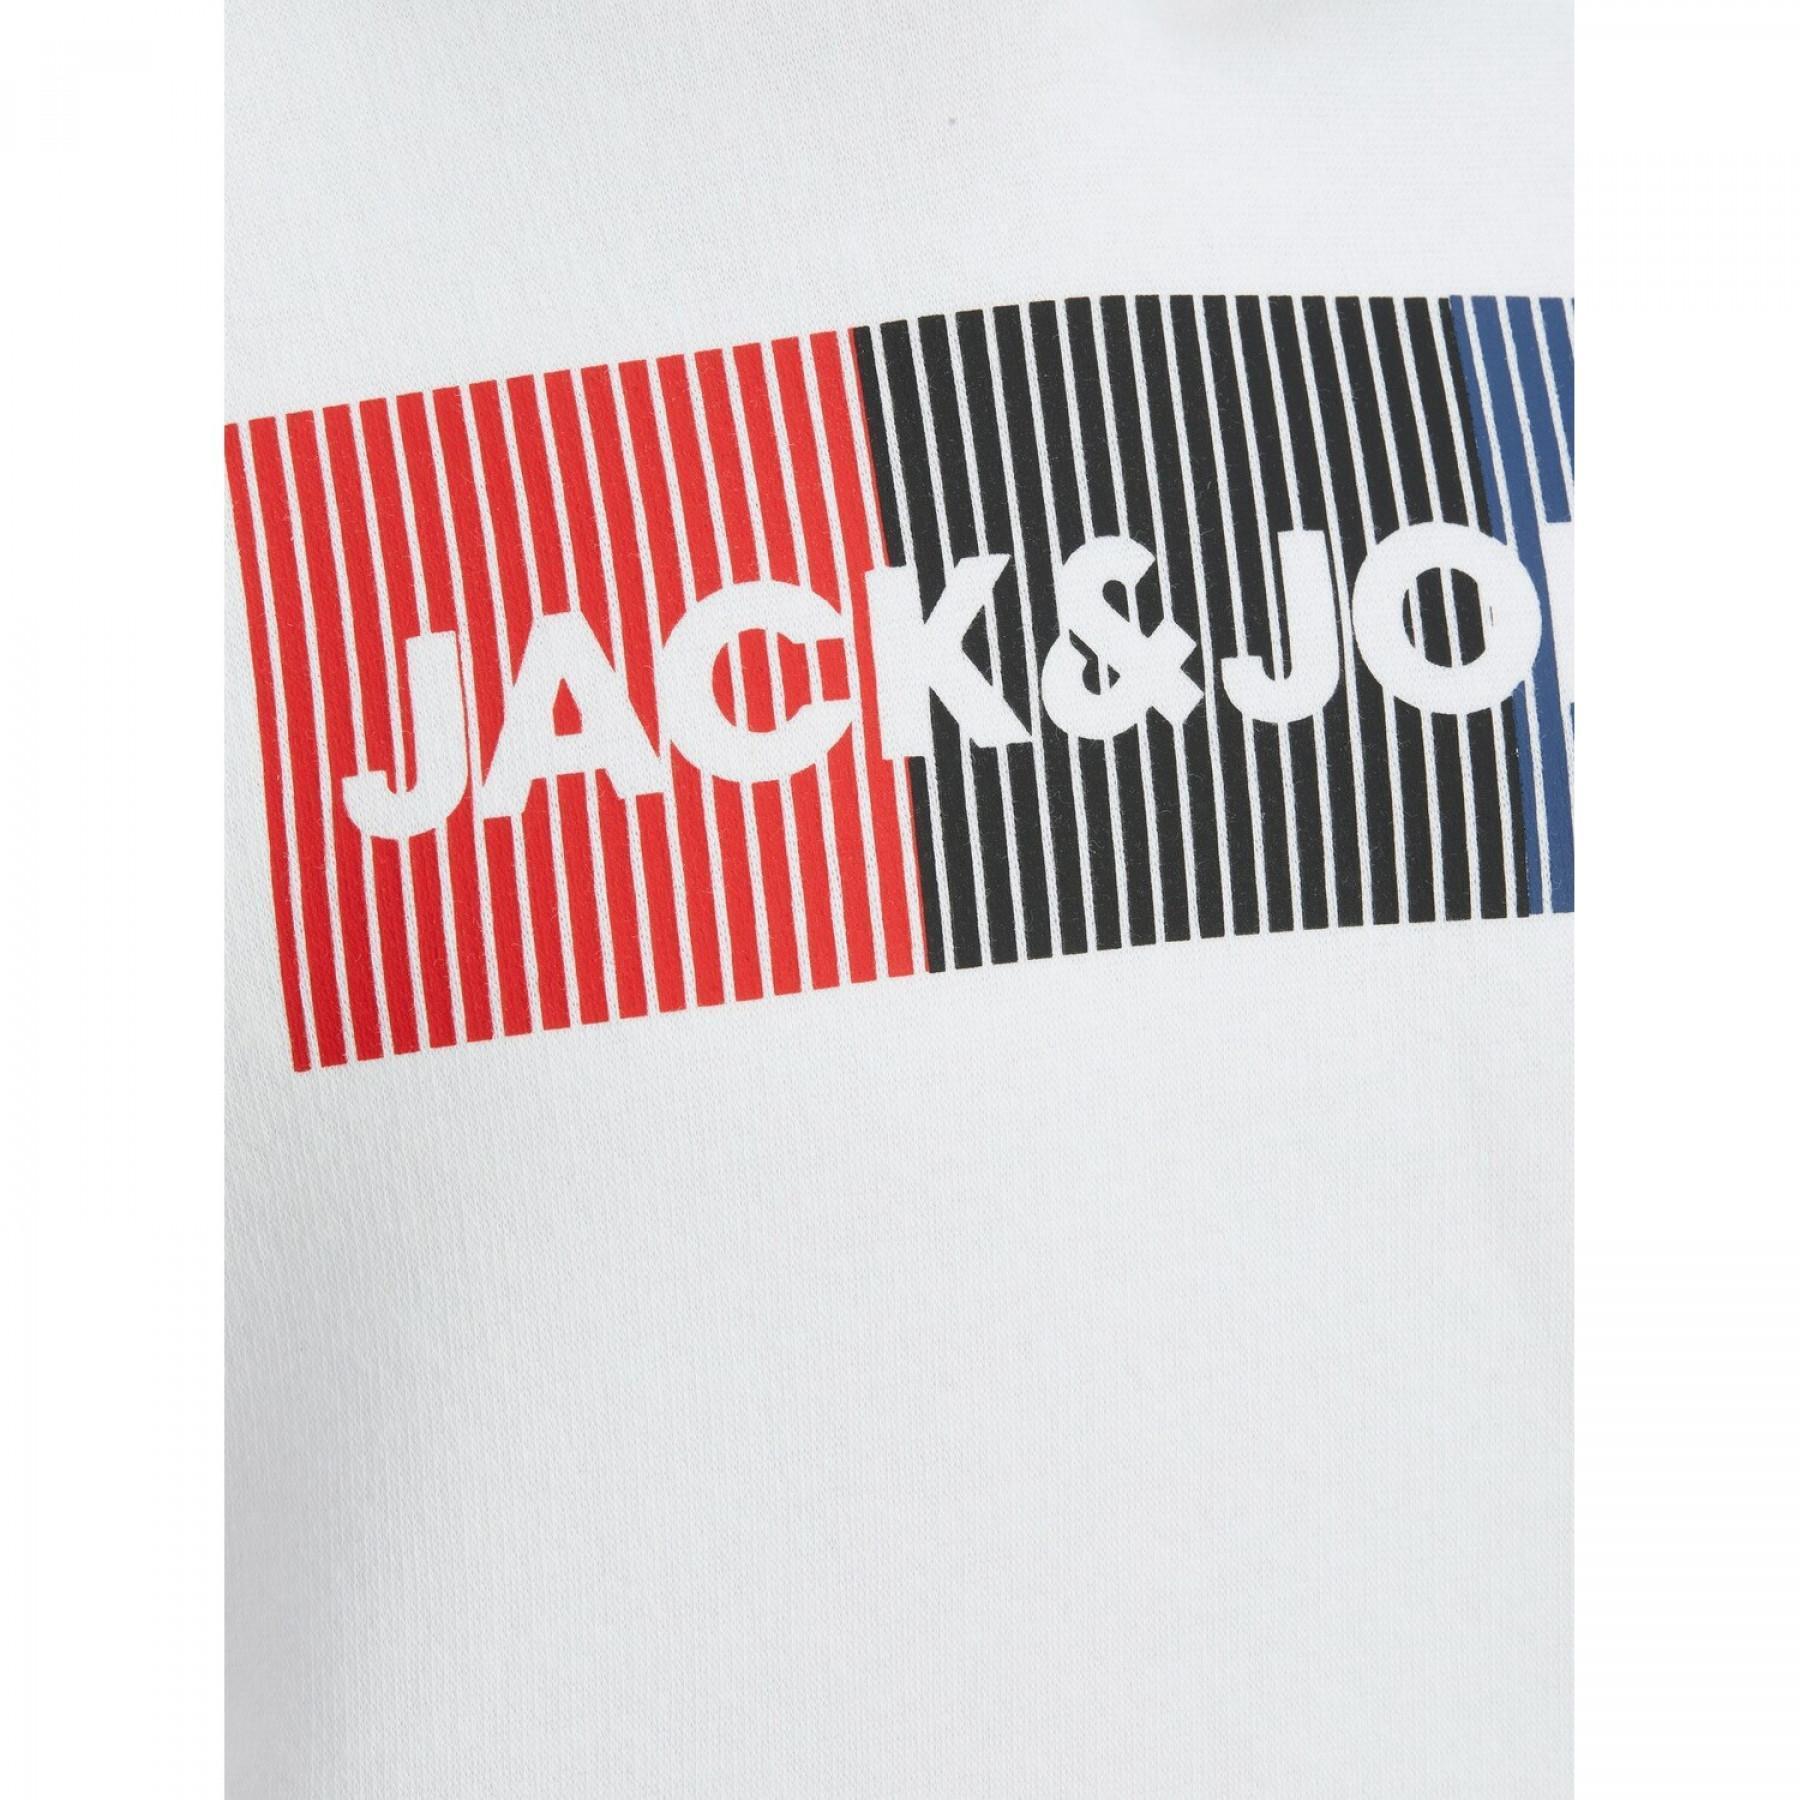 Camisola com capuz para crianças Jack & Jones Corp Logo